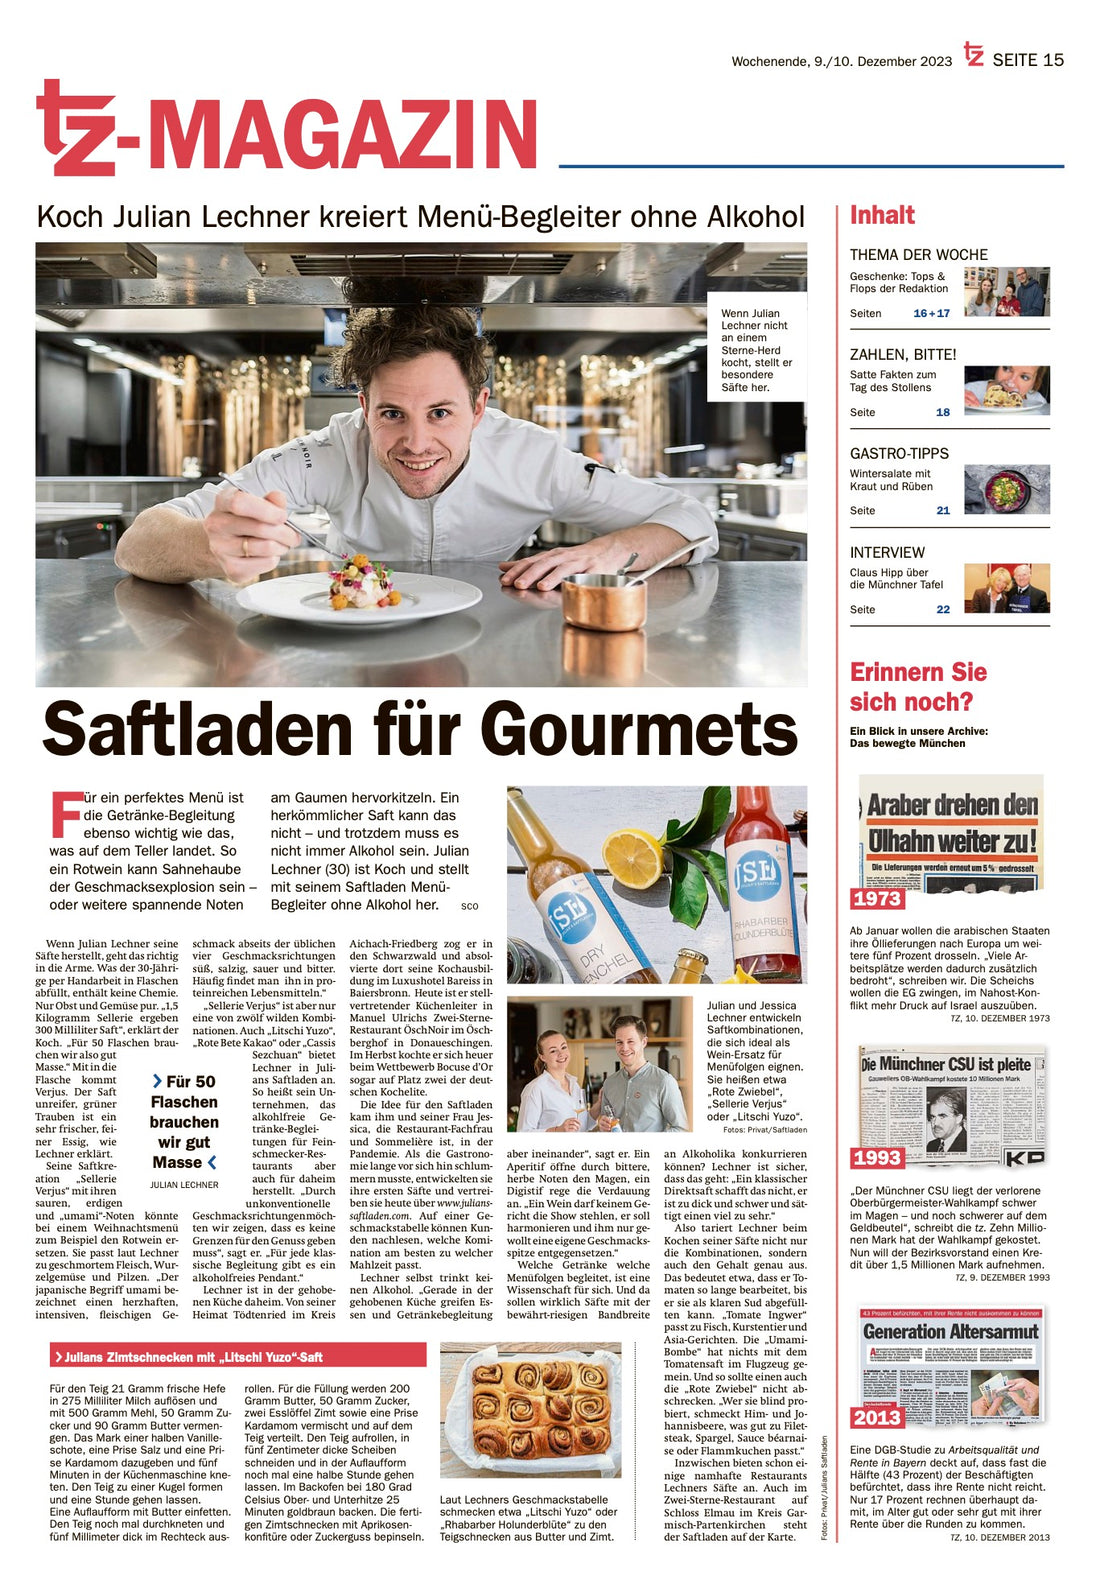 Julian's Saftladen im Münchner Merkur - TZ-Magazin | "Saftladen für Gourmets" | Julian & Jessica Lechner | Cornelia Schramm